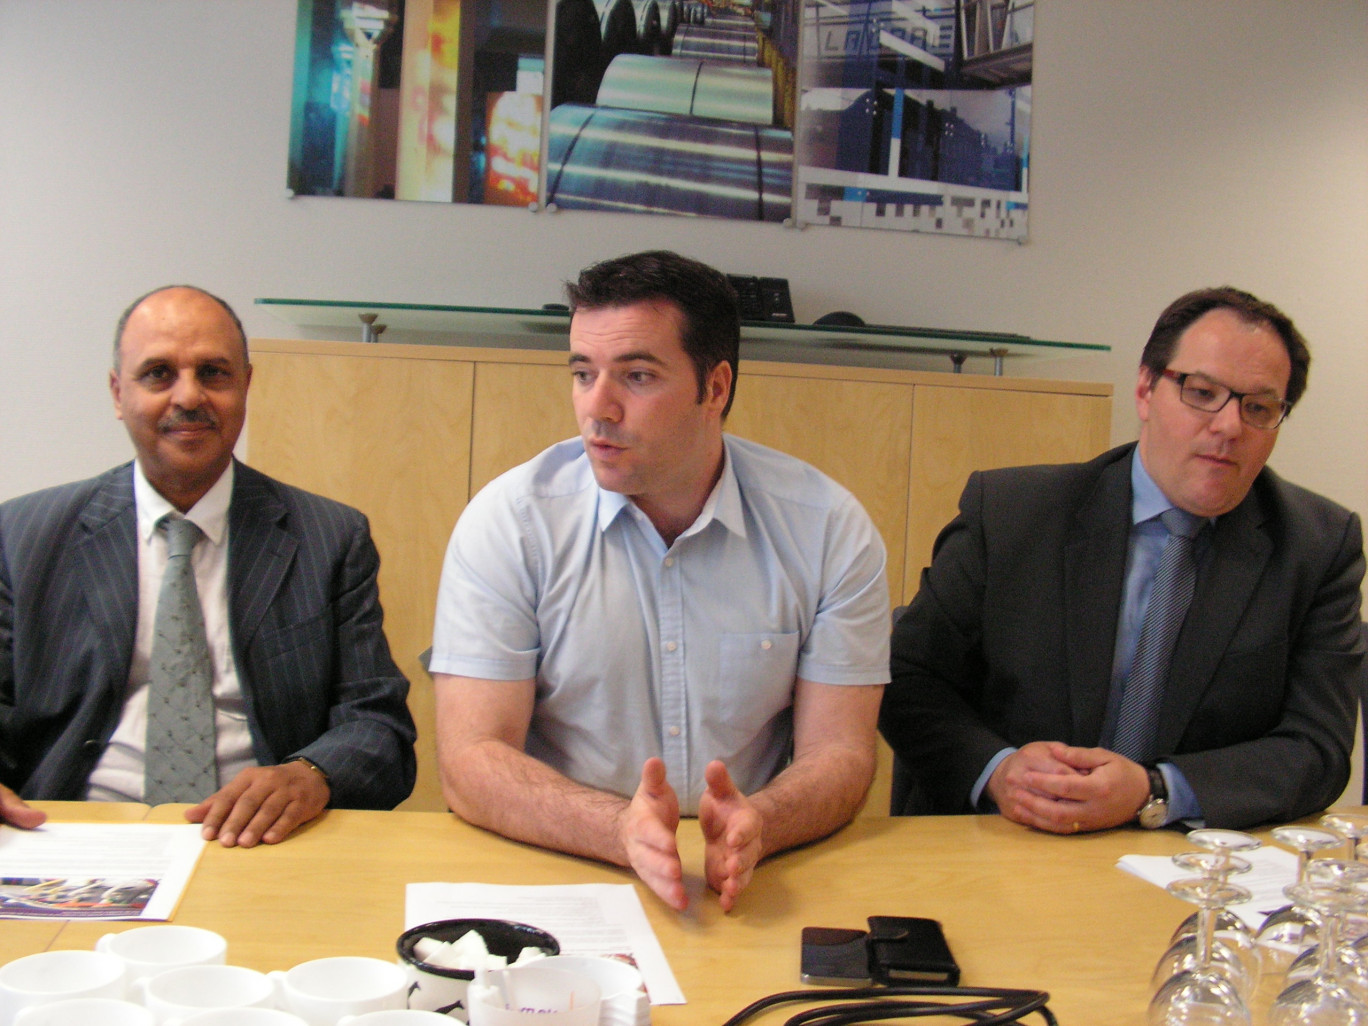 De gauche à droite : Abdelhakim Artiba, président de l’UVHC ; Benjamin Saint-Huile, président de l’AMVS ; Arnaud Decagny, maire de Maubeuge.